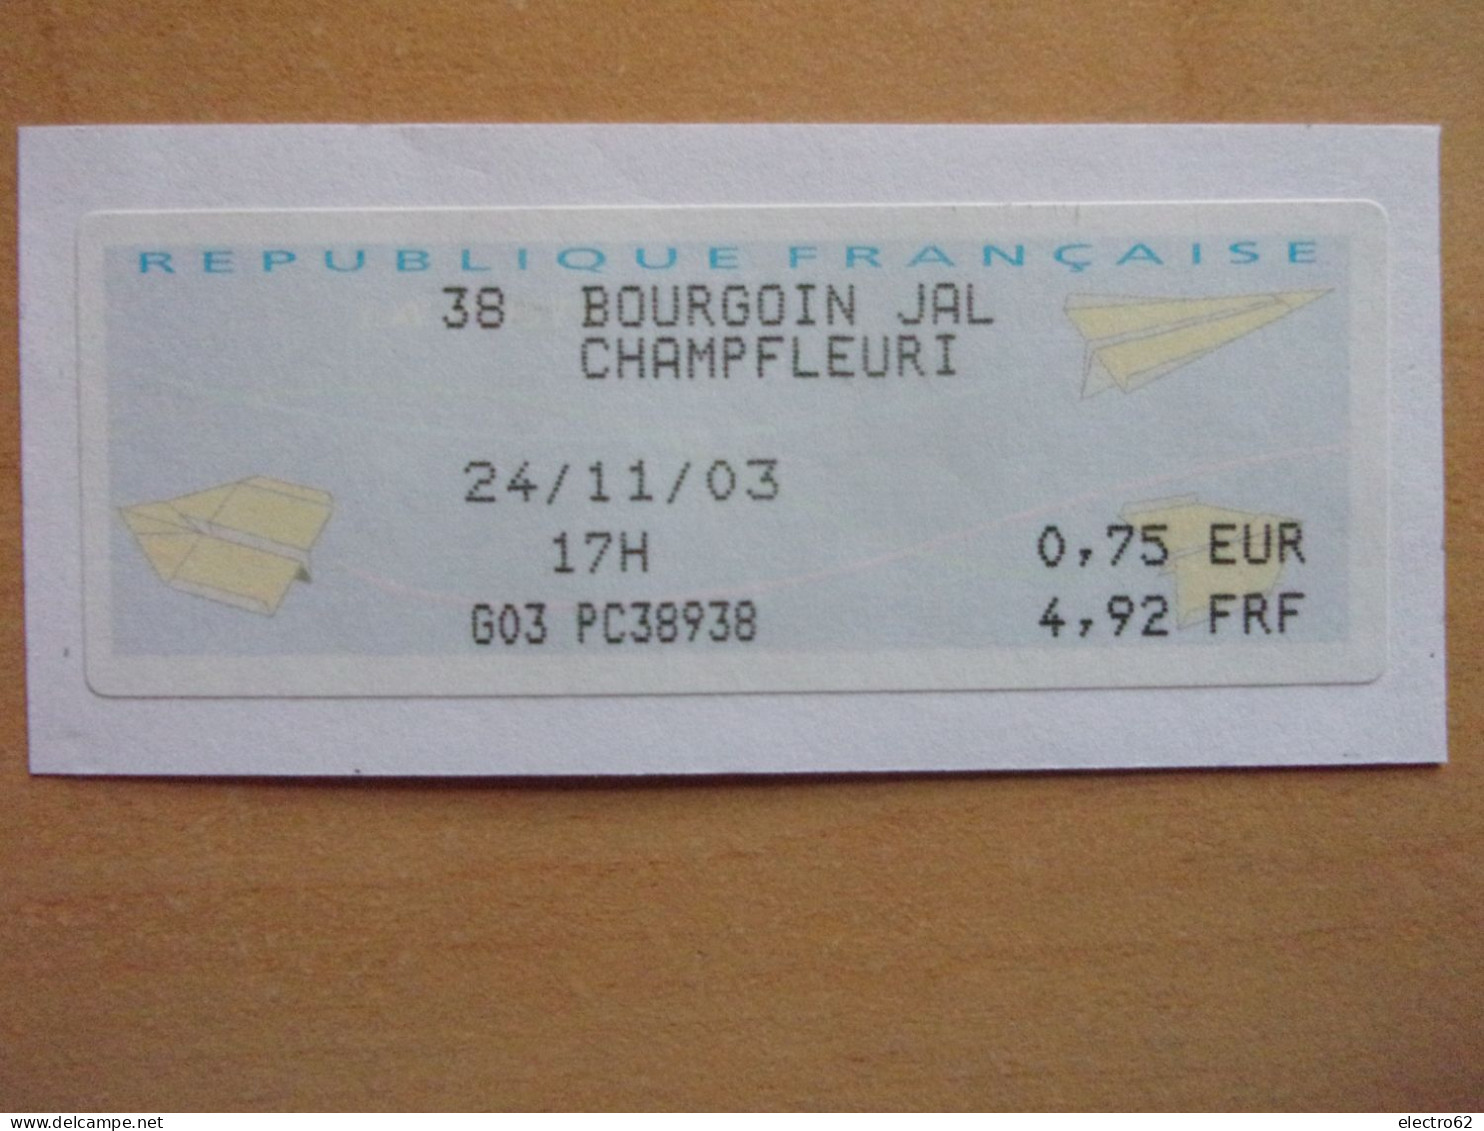 France Vignette BOURGOIN JALLIEU CHAMPFLEURI 24-11-2003 G03 PC 38938 Avion En Papier  Paper Plane - 2000 Type « Avions En Papier »